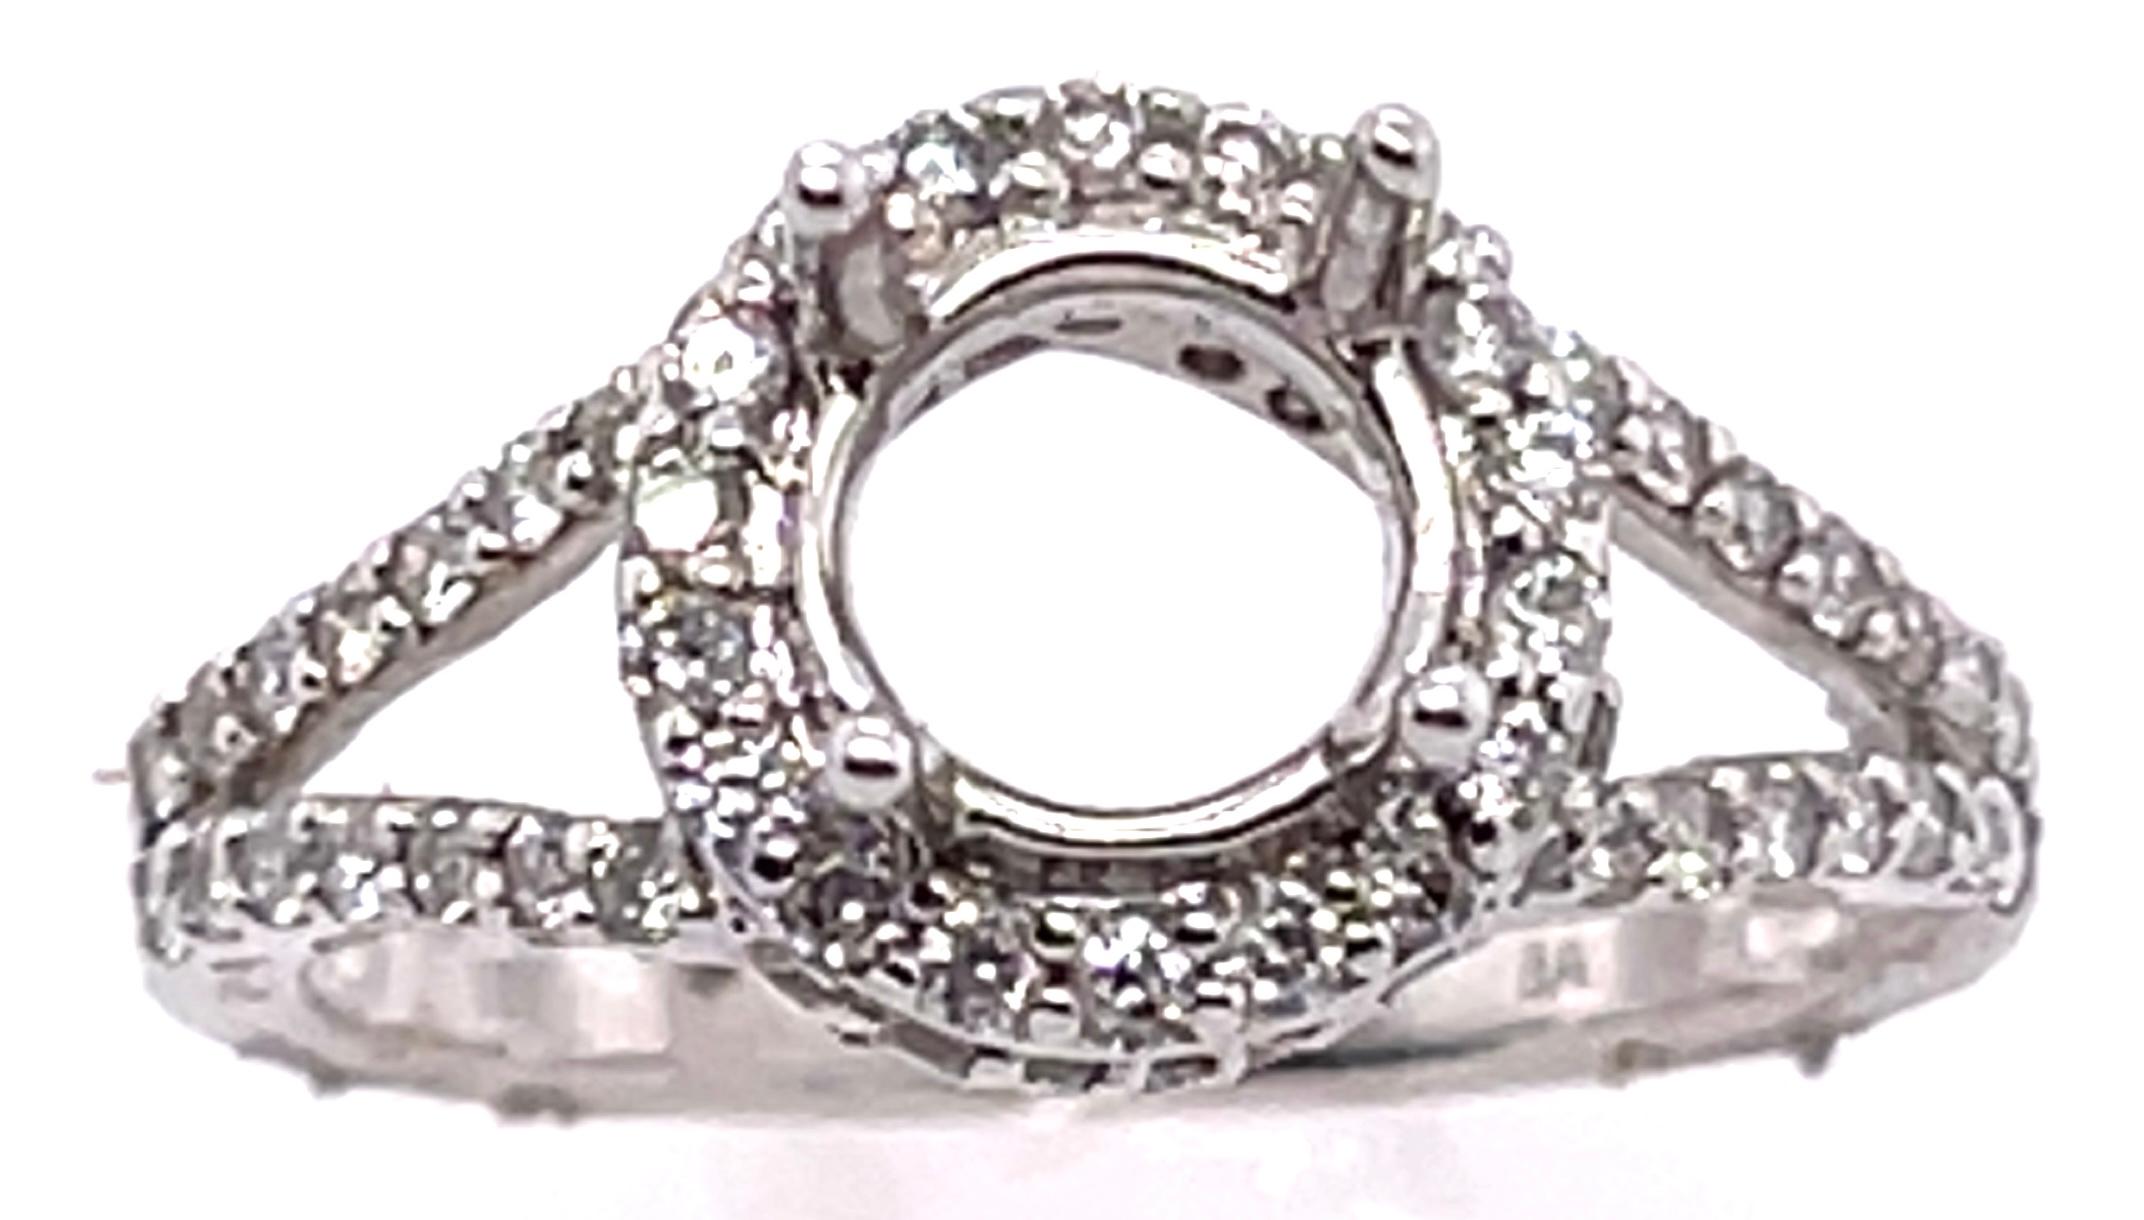 18 Karat Weißgold Runde Verlobungsring Einstellung Diamant Halo und zwei Reihen Band
Größe 6.5
0.80 Gesamtgewicht der Diamanten.
4.42 Gramm Gesamtgewicht.